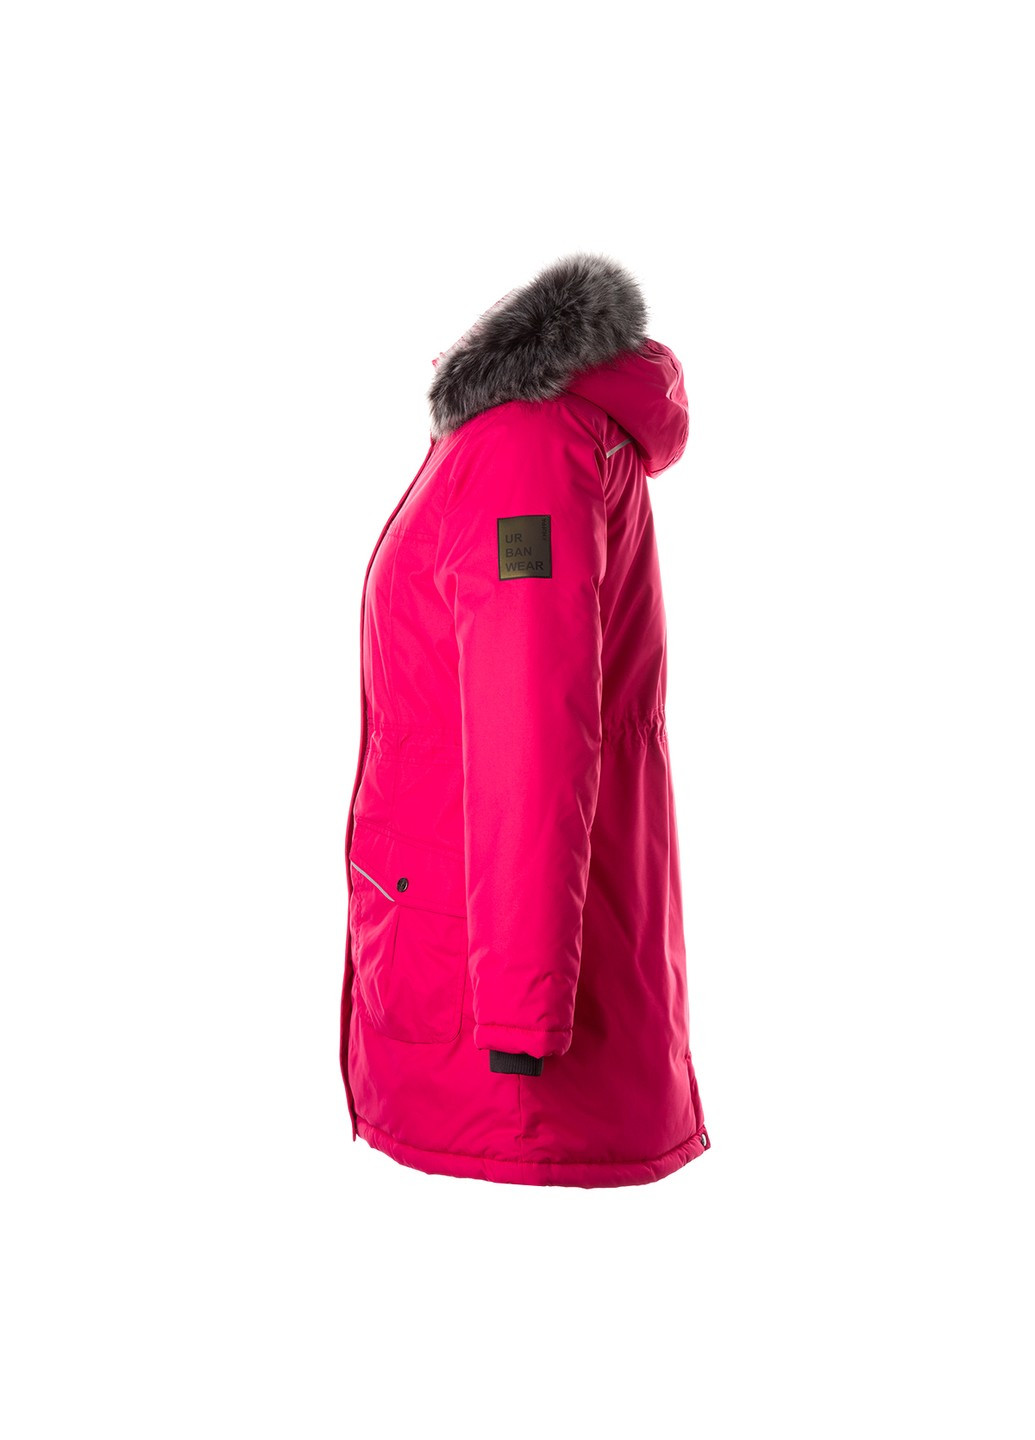 Фуксиновая зимняя куртка удлиненная зимняя mona 2 Huppa